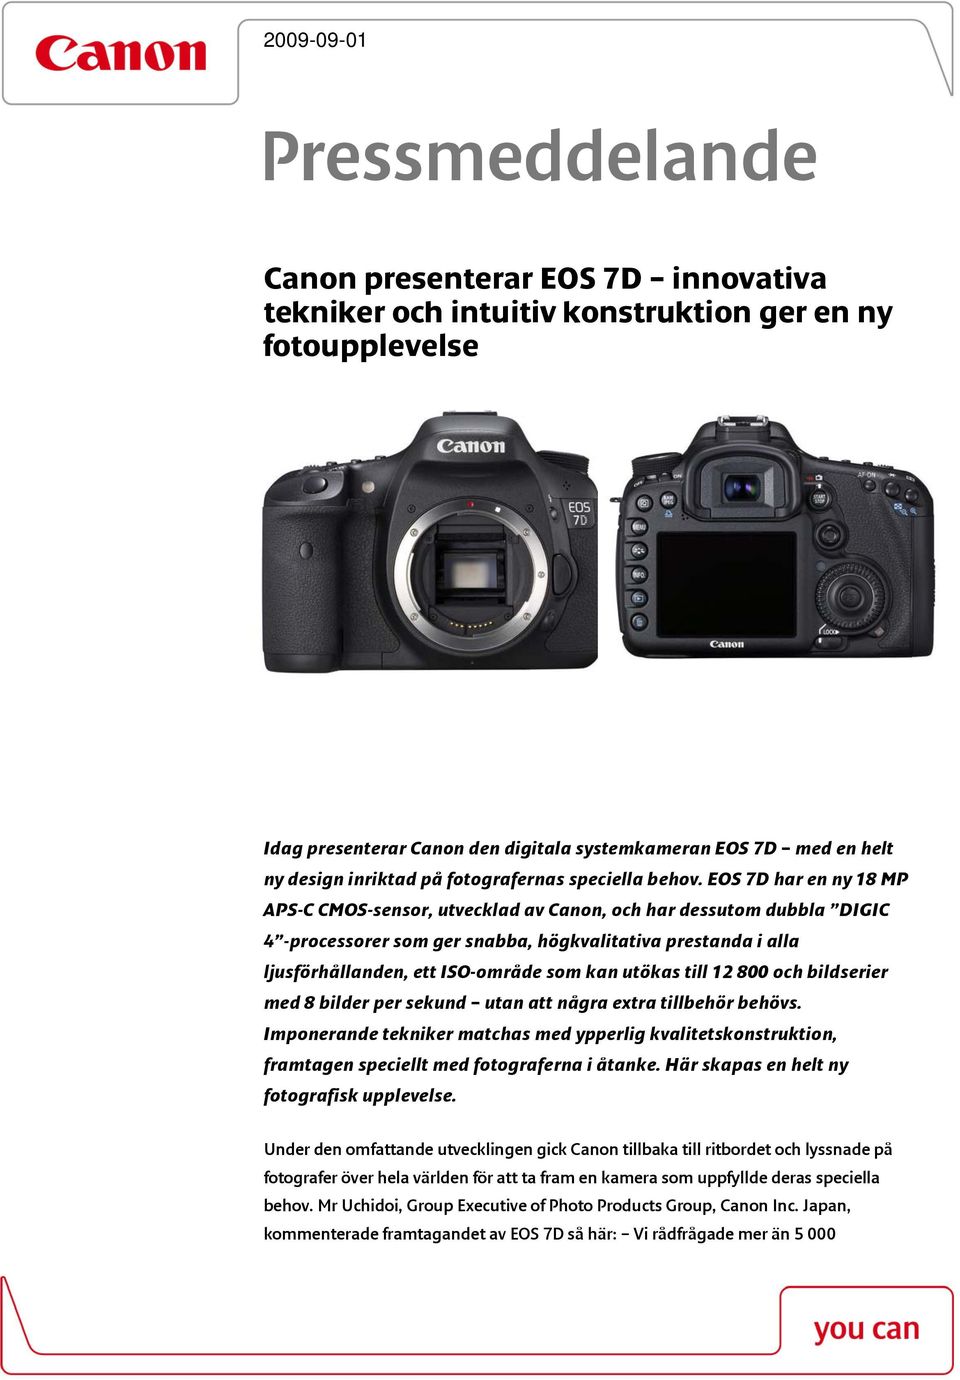 EOS 7D har en ny 18 MP APS-C CMOS-sensor, utvecklad av Canon, och har dessutom dubbla DIGIC 4 -processorer som ger snabba, högkvalitativa prestanda i alla ljusförhållanden, ett ISO-område som kan